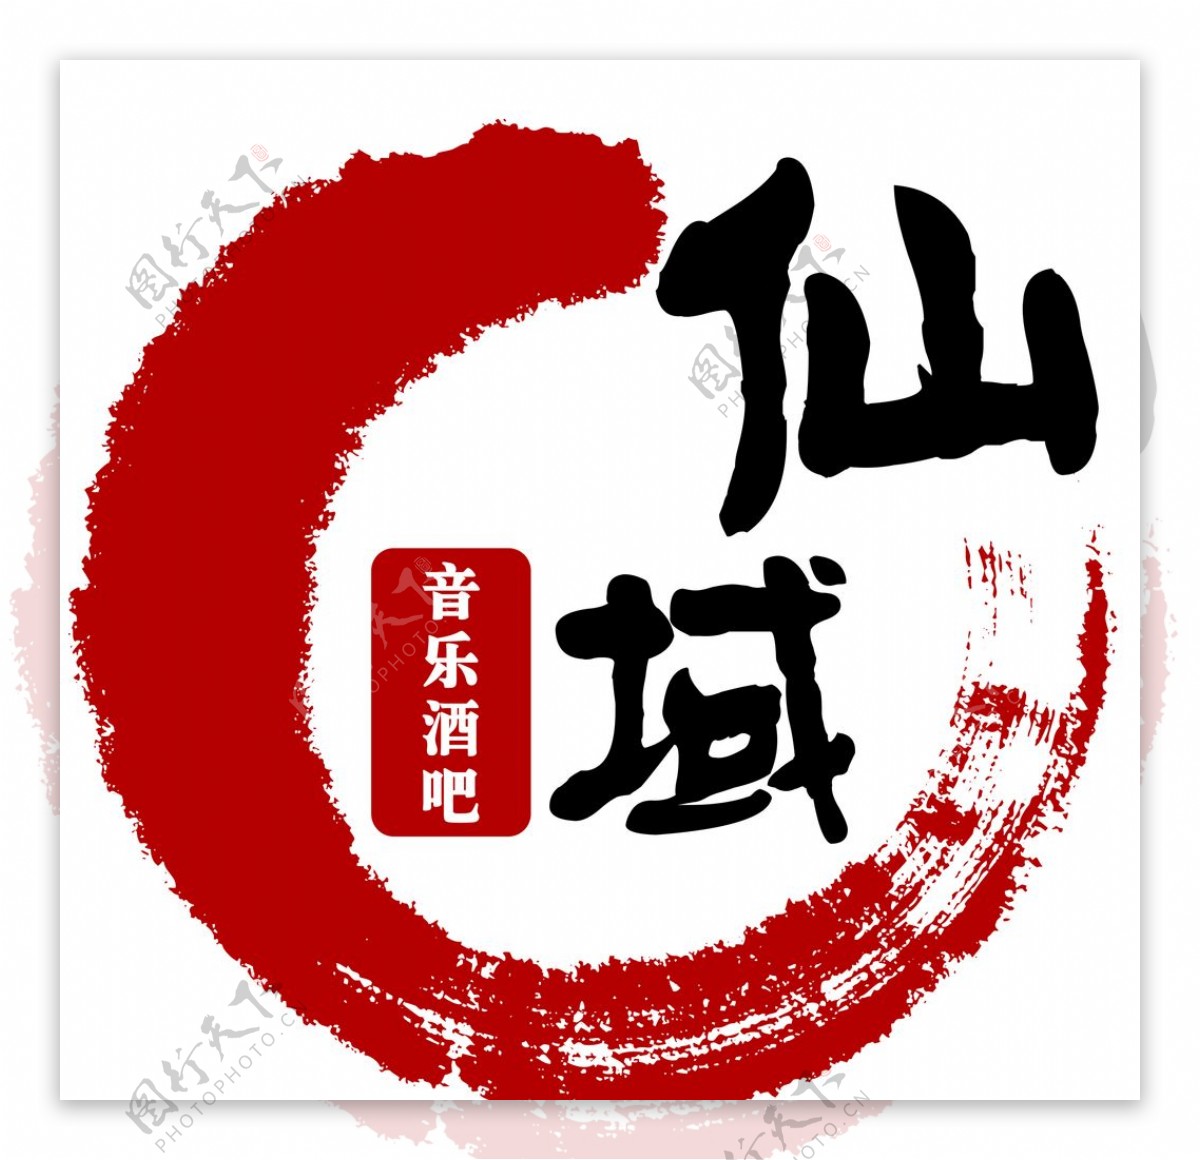 酒吧中国风logo标识矢量图